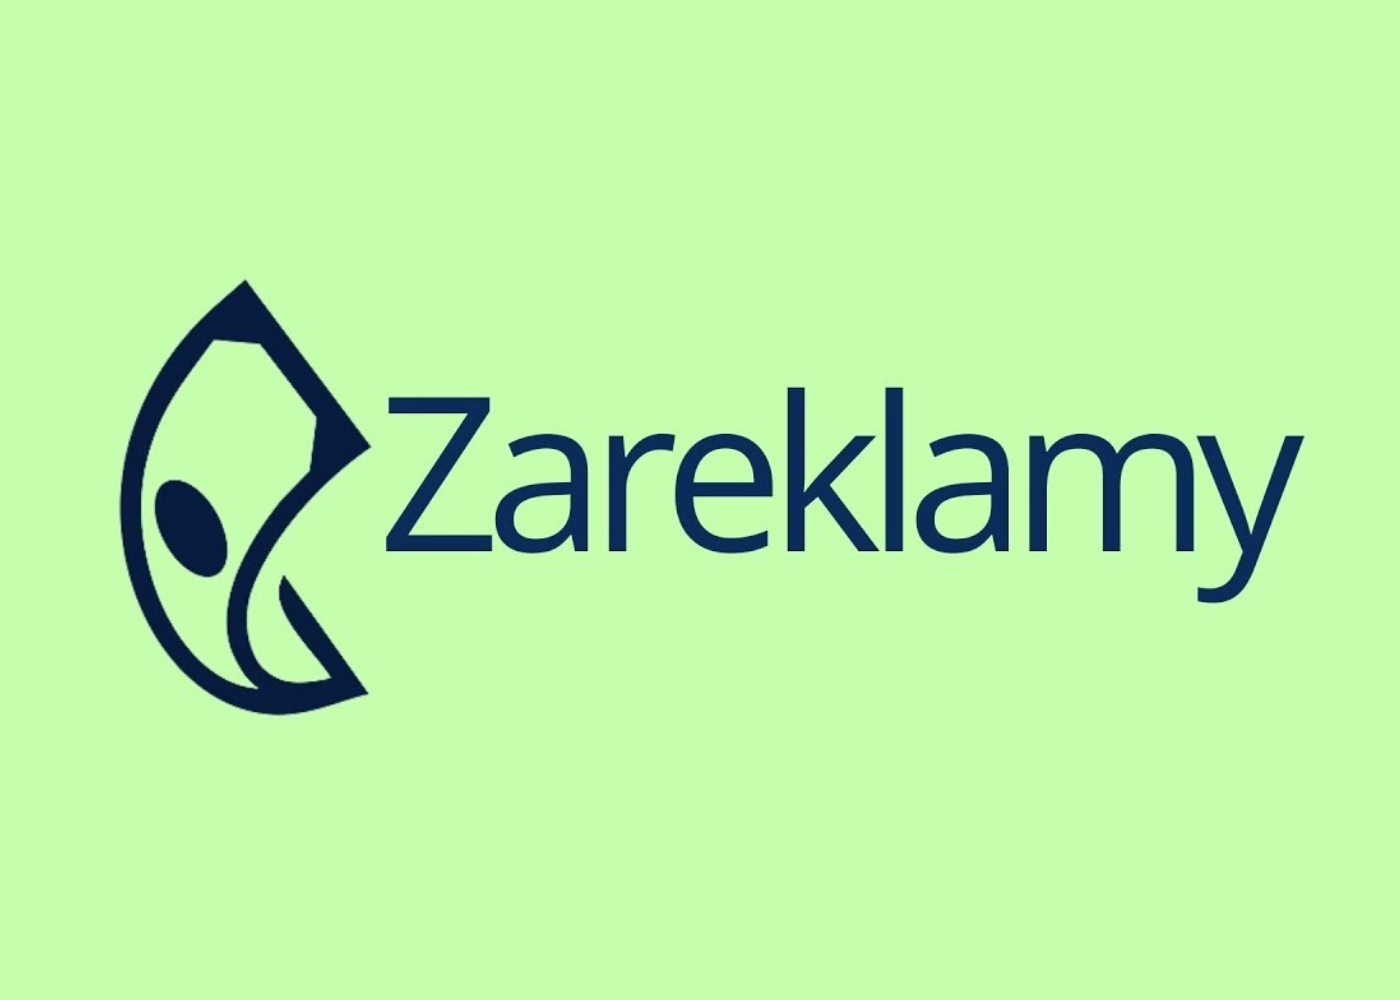 What Is Zareklamy?